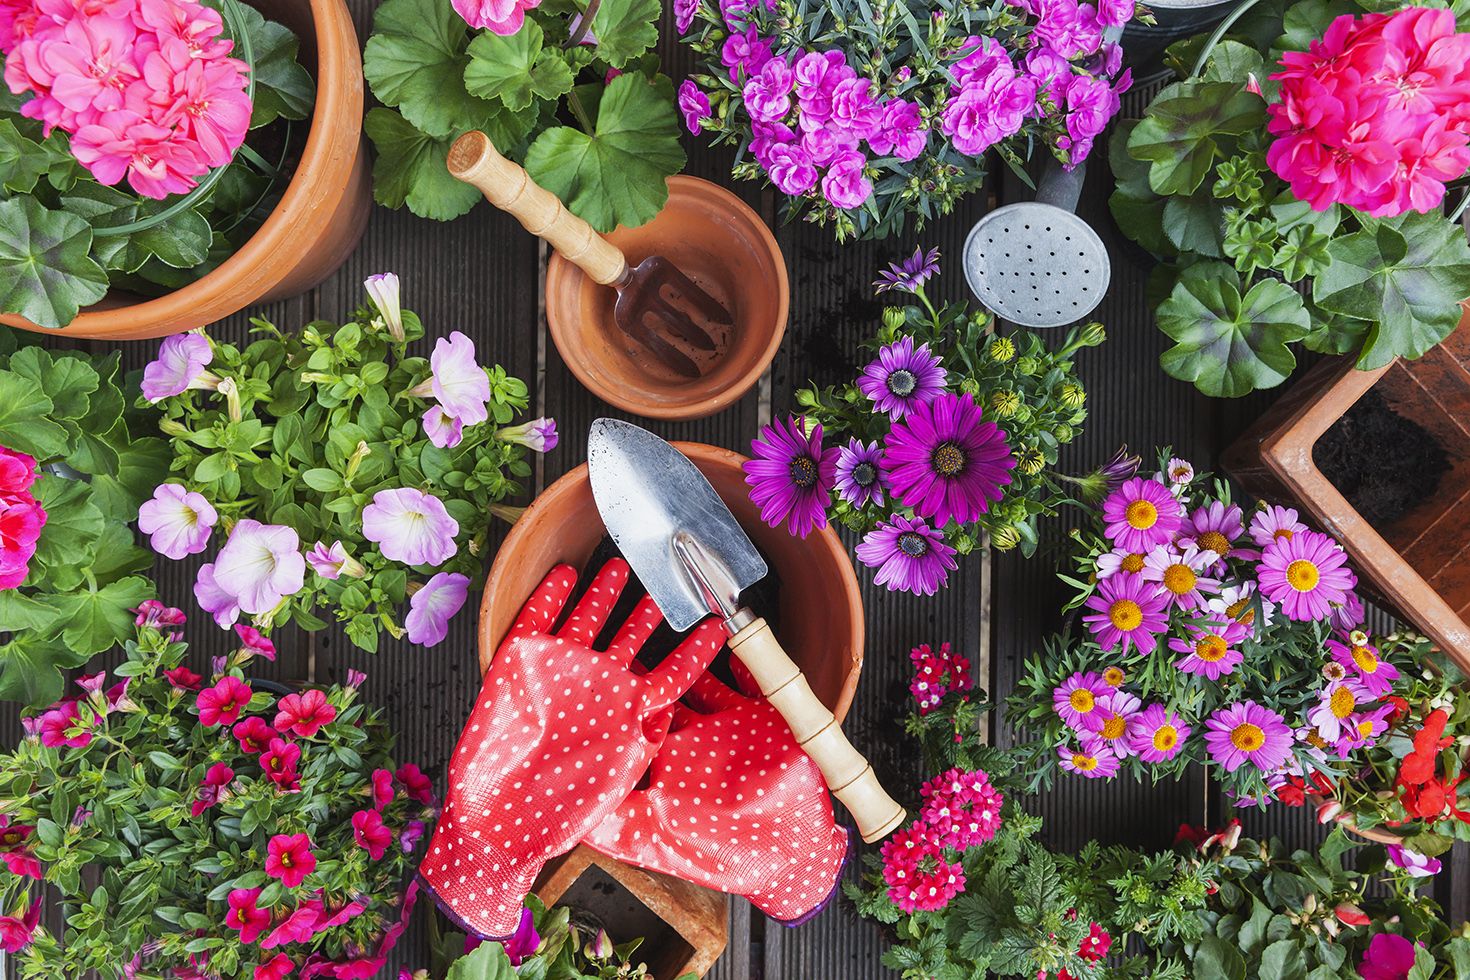 23 Best Online Garden Accessories - Best Garden Tools on Amazon